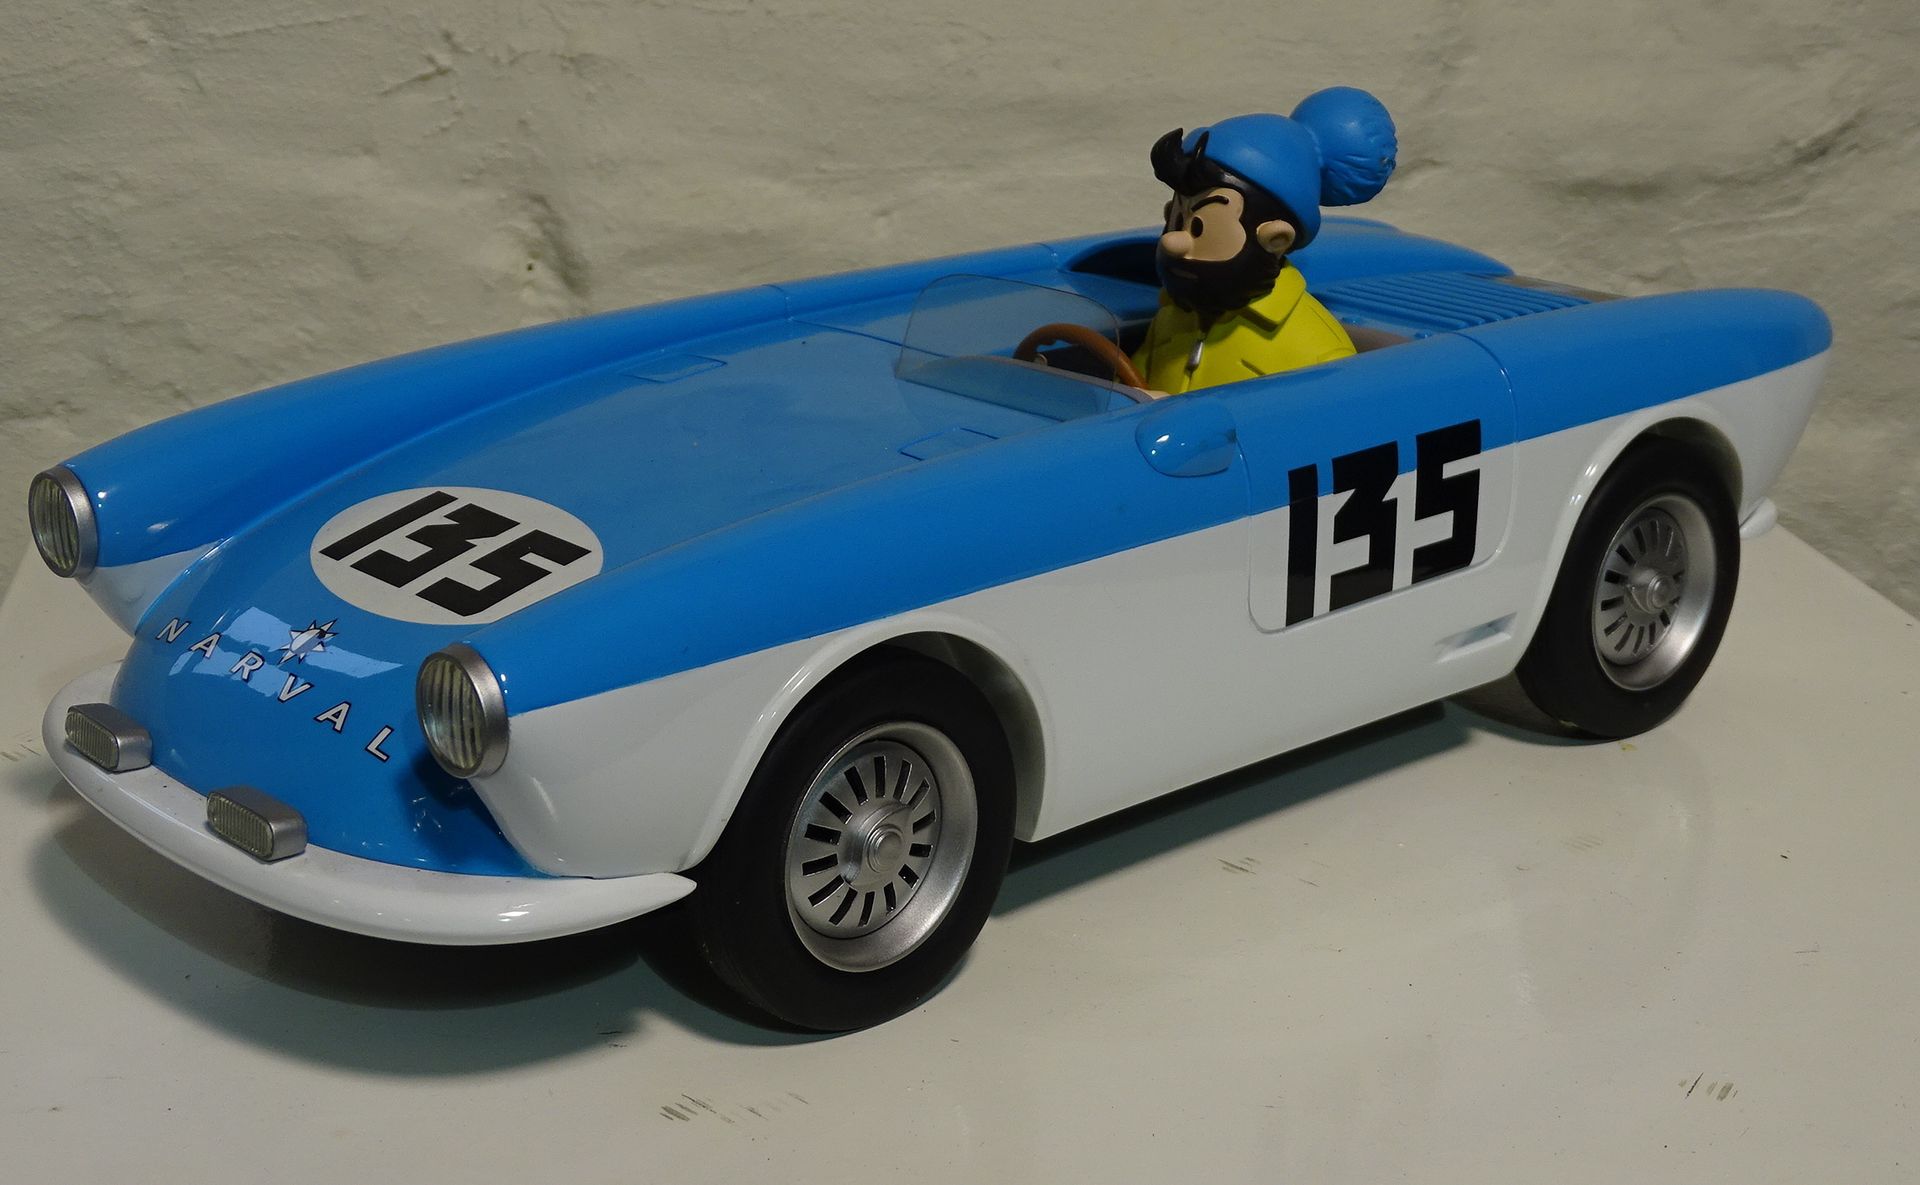 Tintin & Hergé Tondu from "Tif & Tonduî" in a blue car